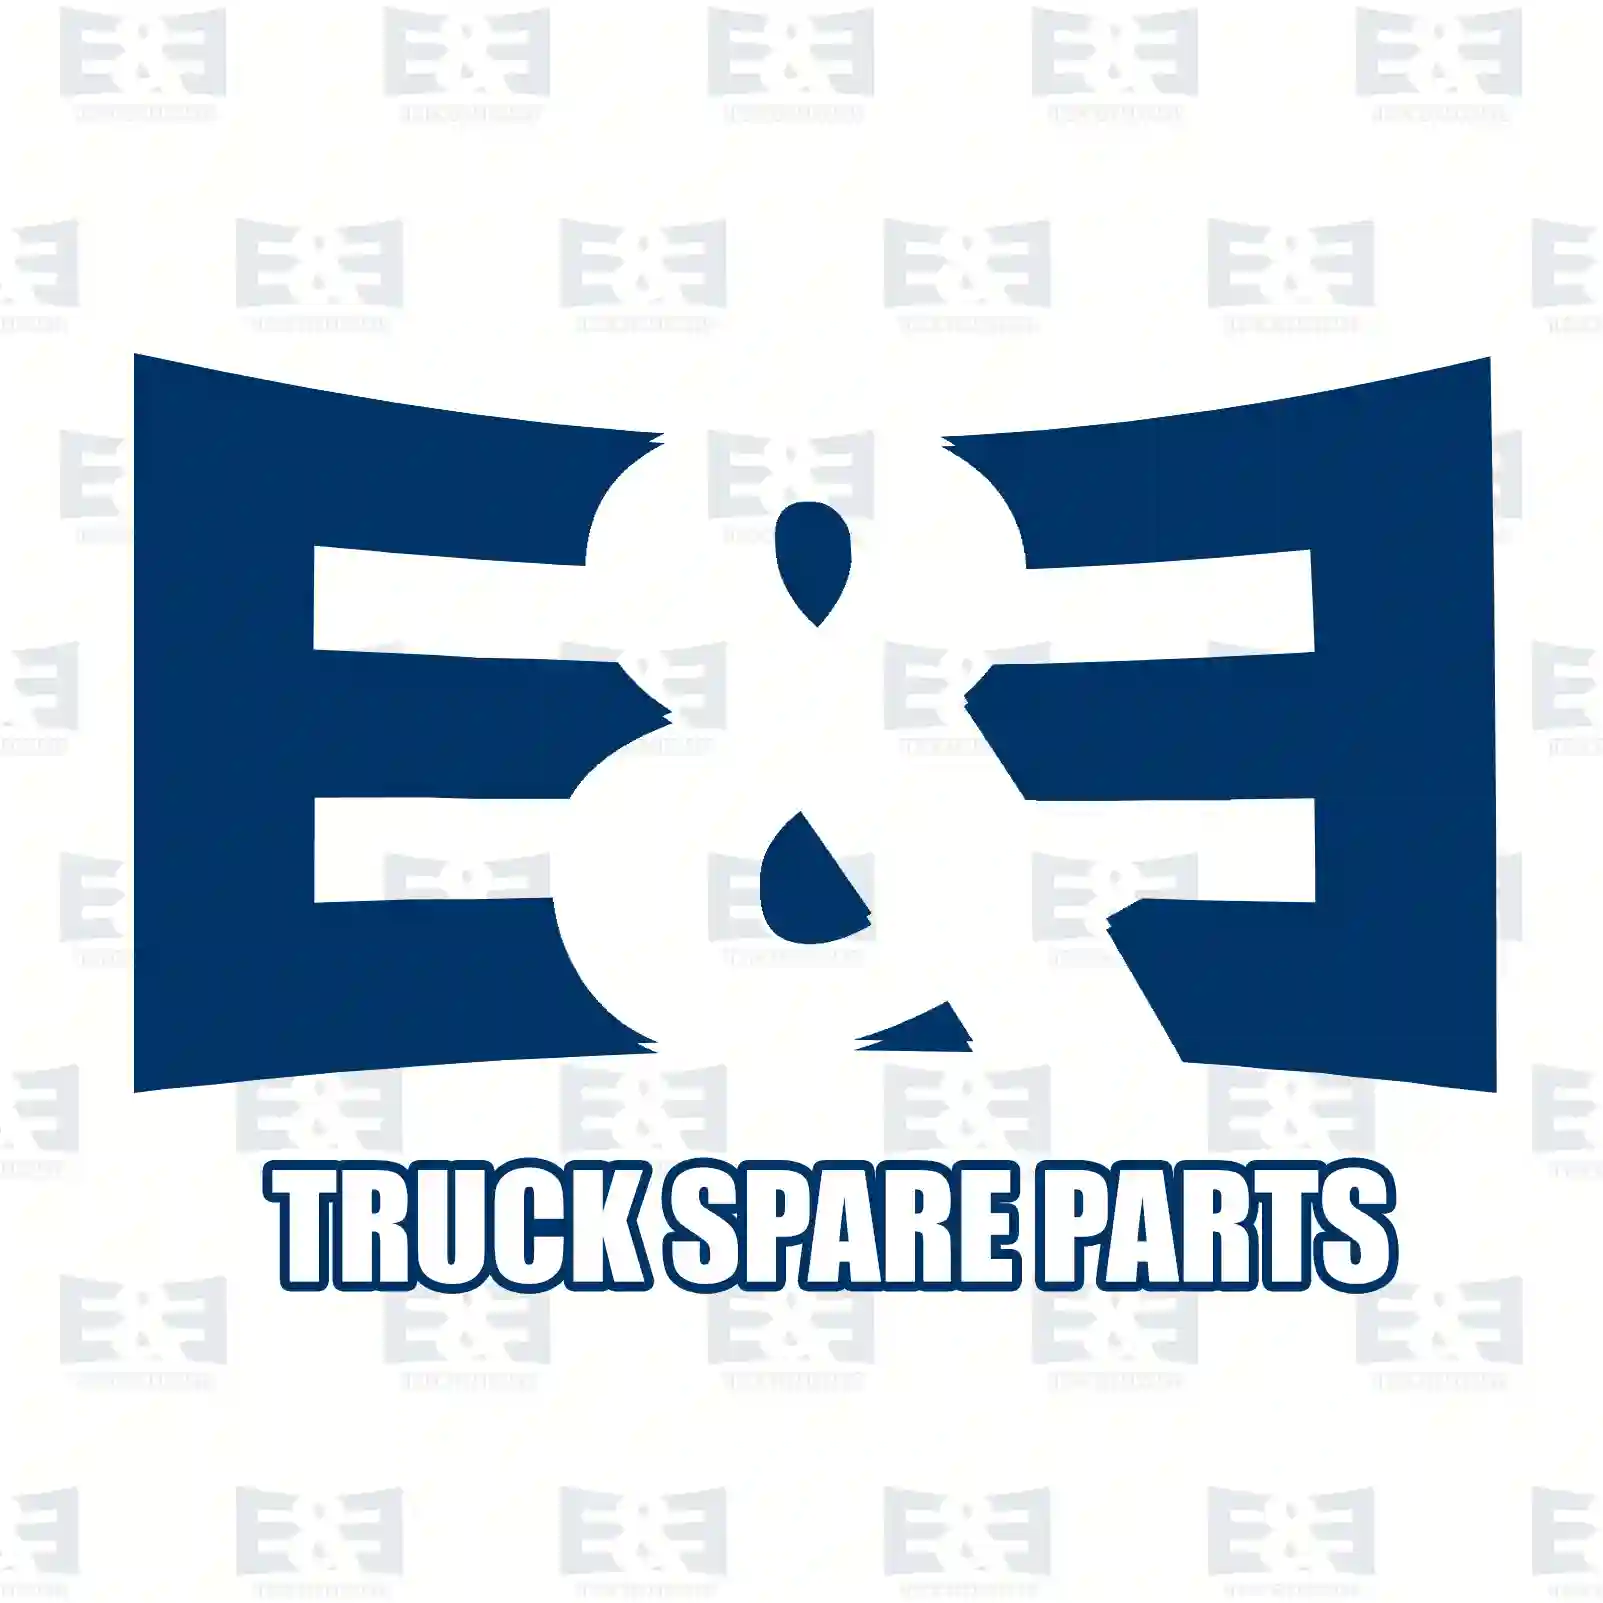 Unit injector, 2E2286922, 10574394, 1440580, 1574394, 574394 ||  2E2286922 E&E Truck Spare Parts | Truck Spare Parts, Auotomotive Spare Parts Unit injector, 2E2286922, 10574394, 1440580, 1574394, 574394 ||  2E2286922 E&E Truck Spare Parts | Truck Spare Parts, Auotomotive Spare Parts